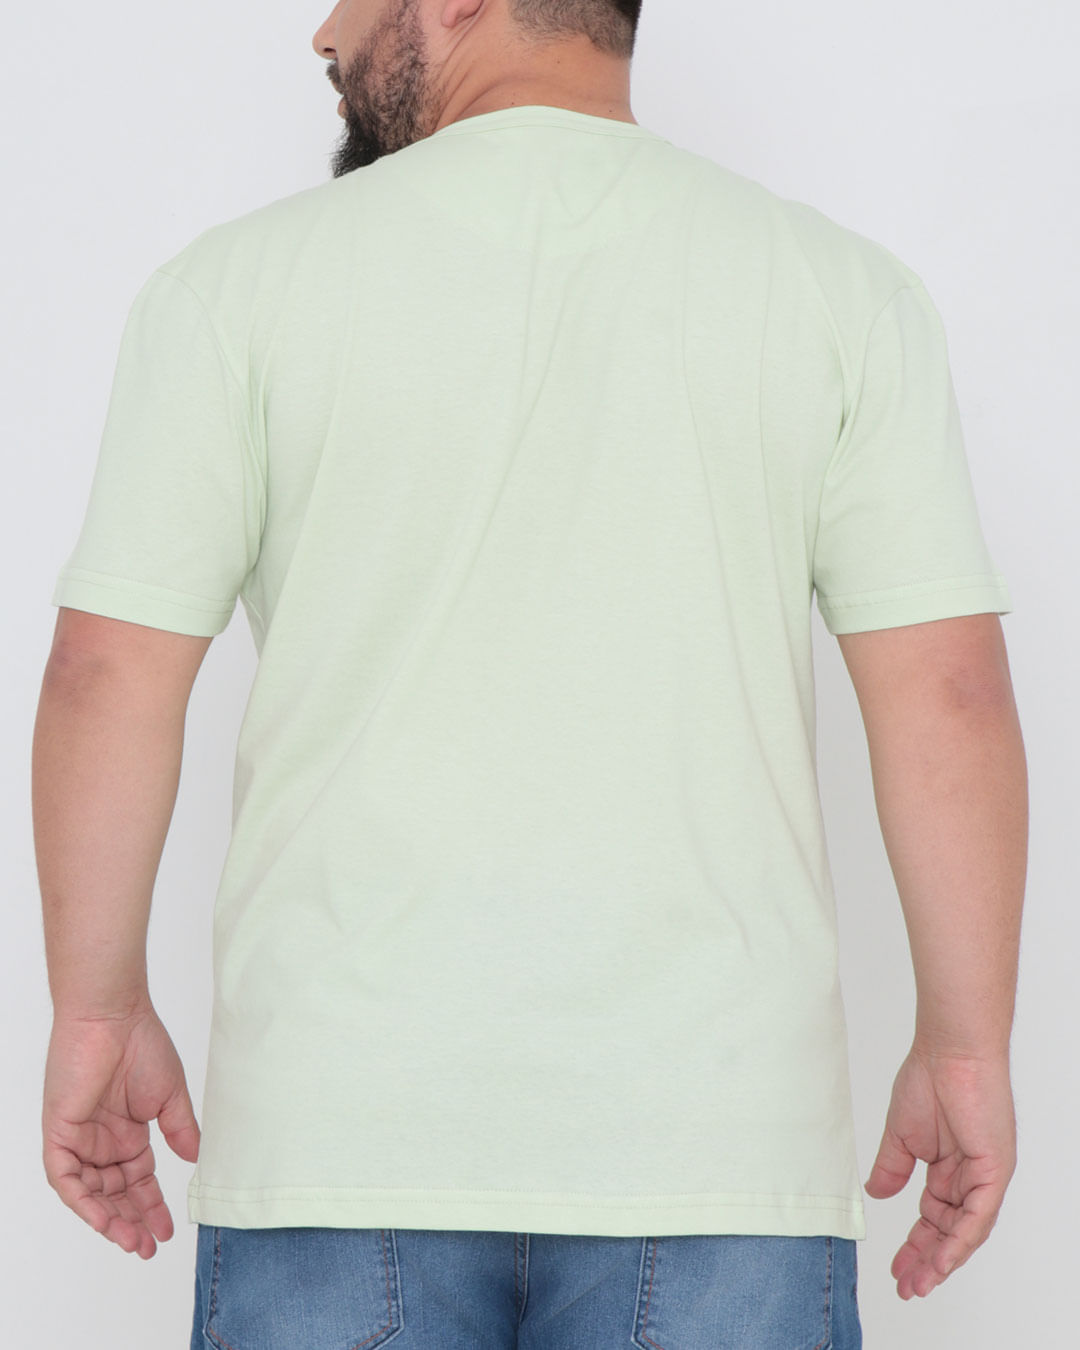 Camiseta-Plus-Size-Manga-Curta-Basica-Verde-Claro